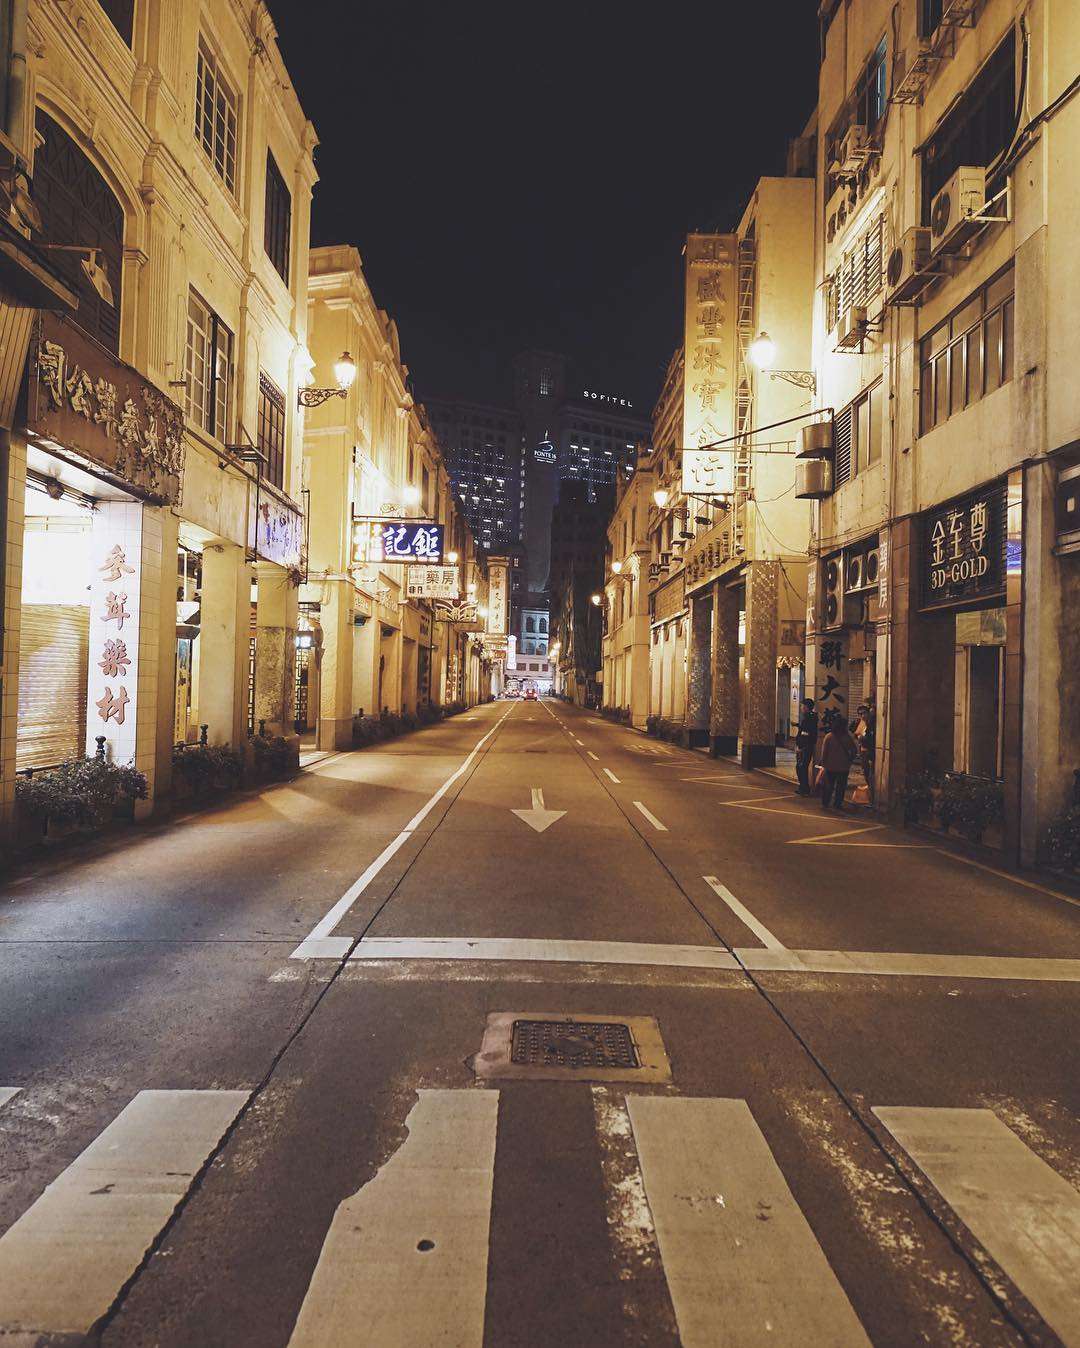 Shot of a street in Macau